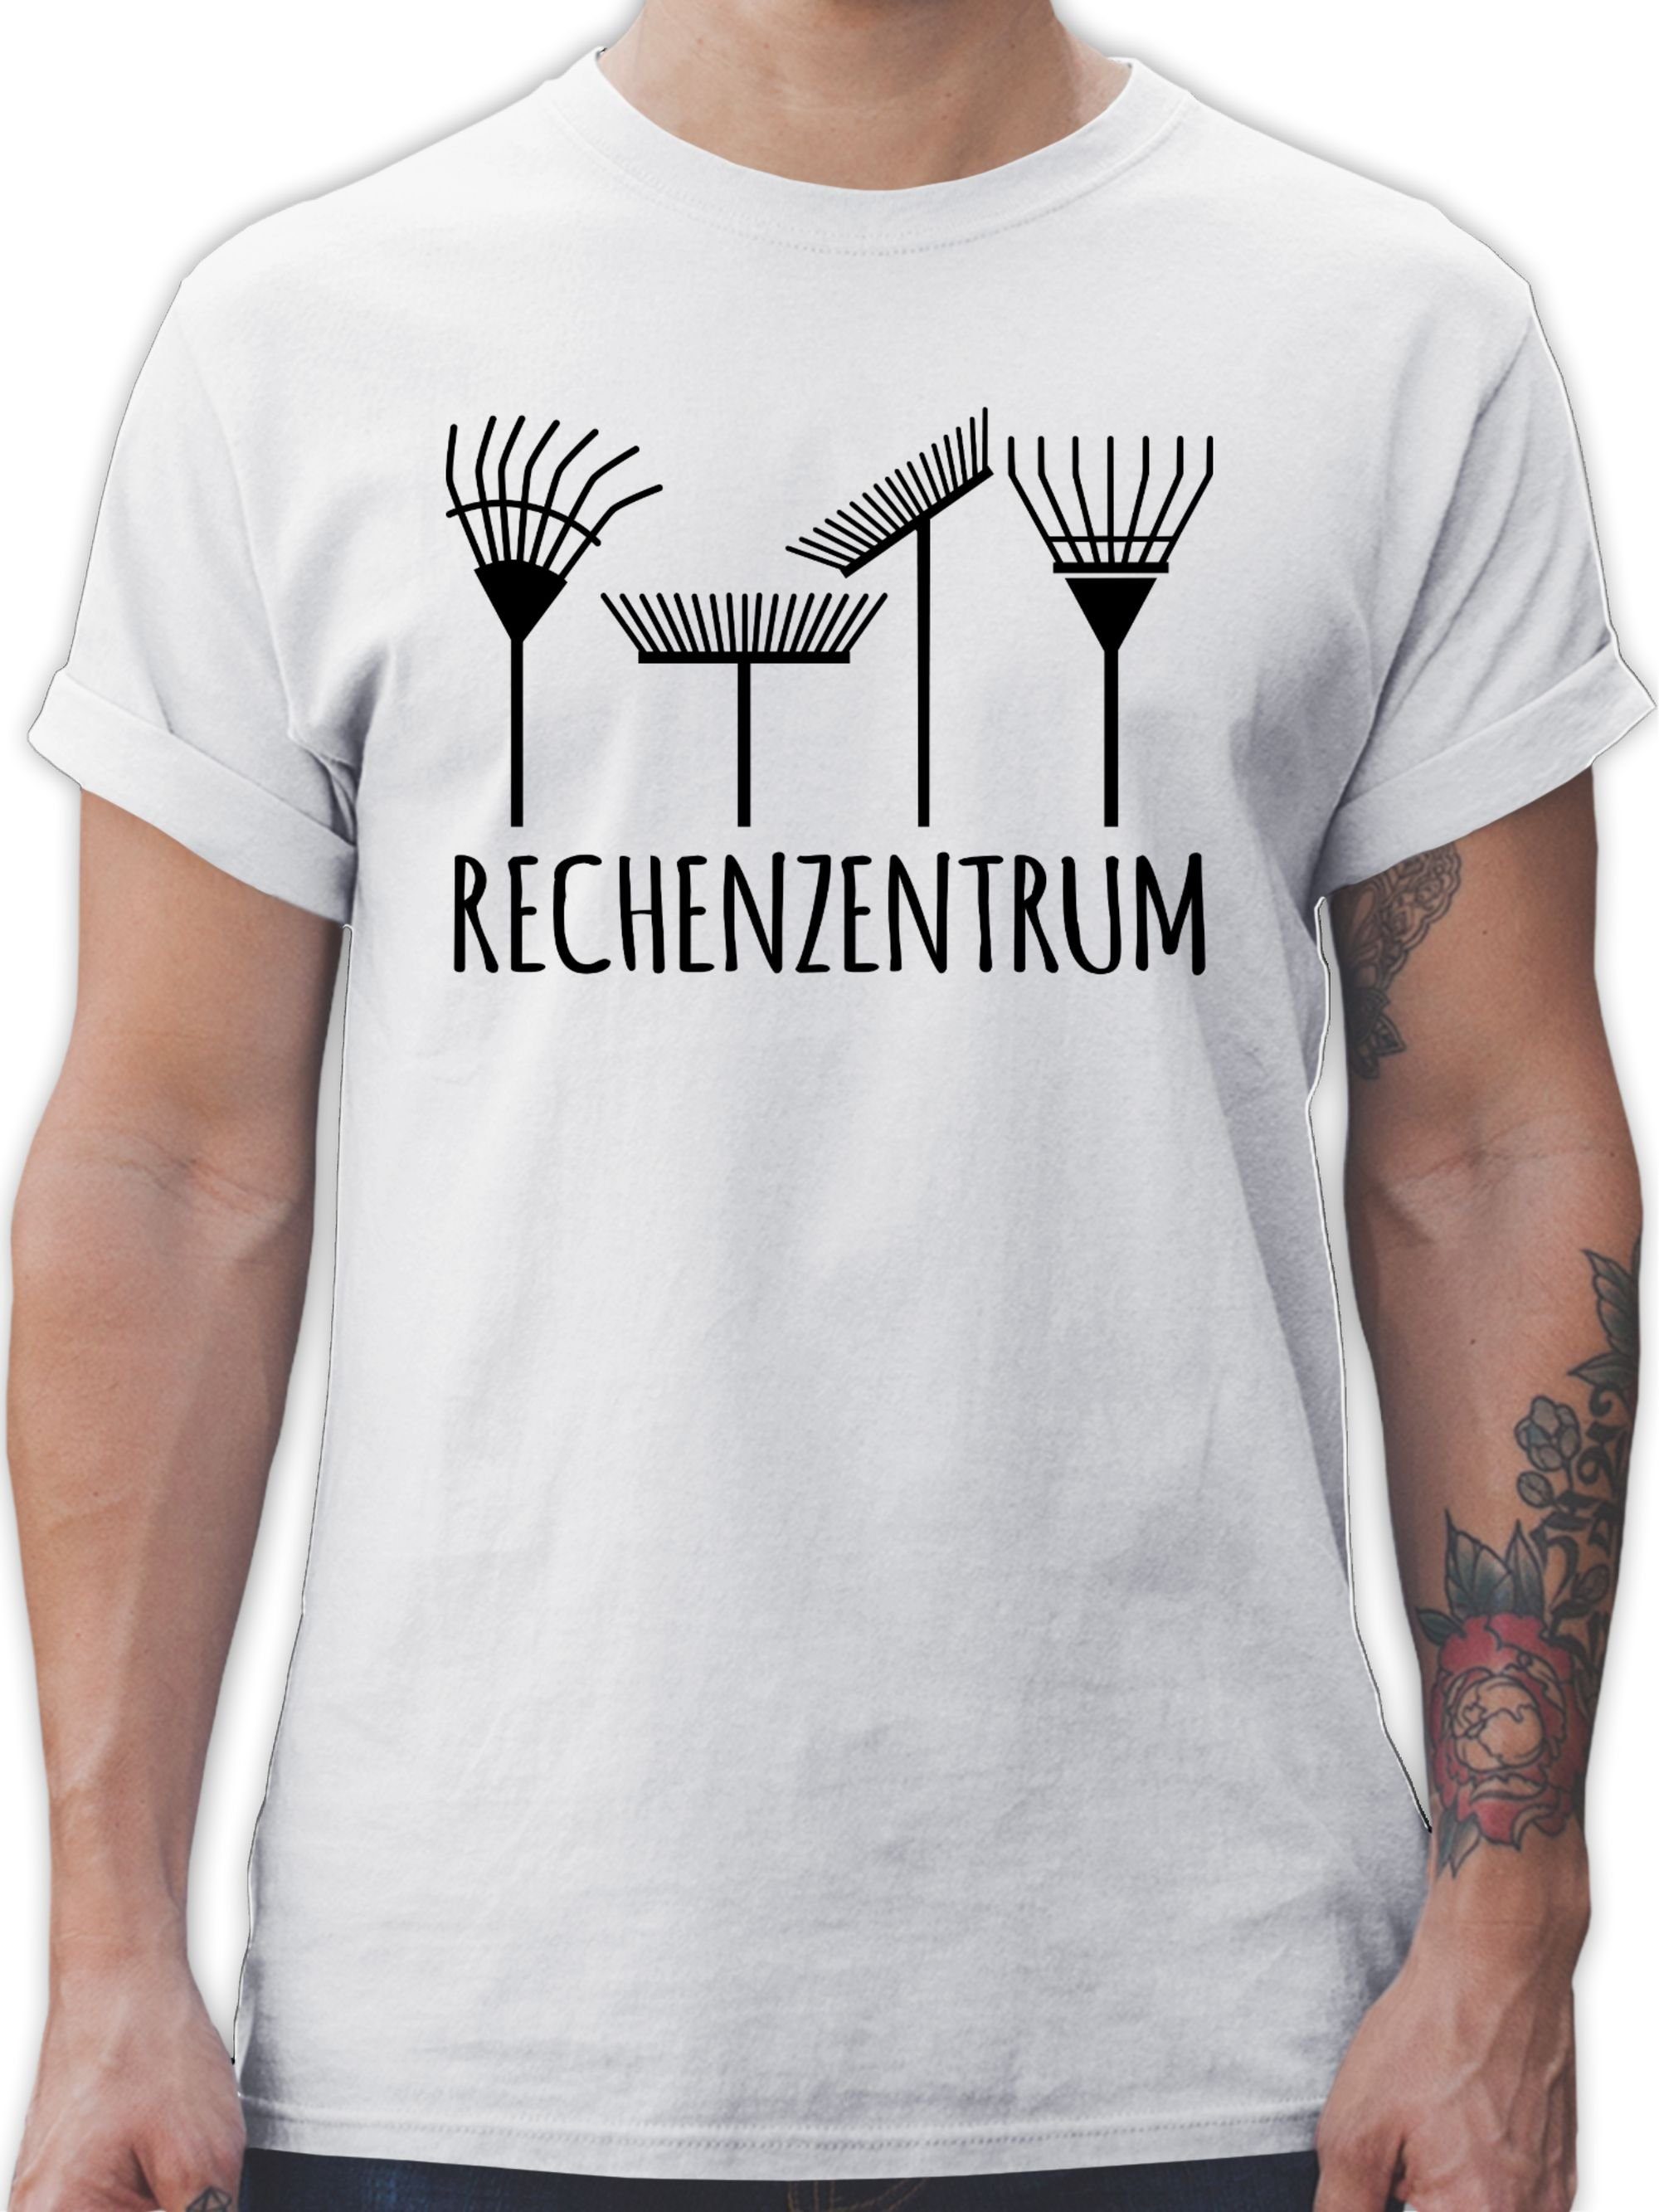 Weiß T-Shirt 03 Rechenzentrum schwarz - Hobby Outfit Shirtracer